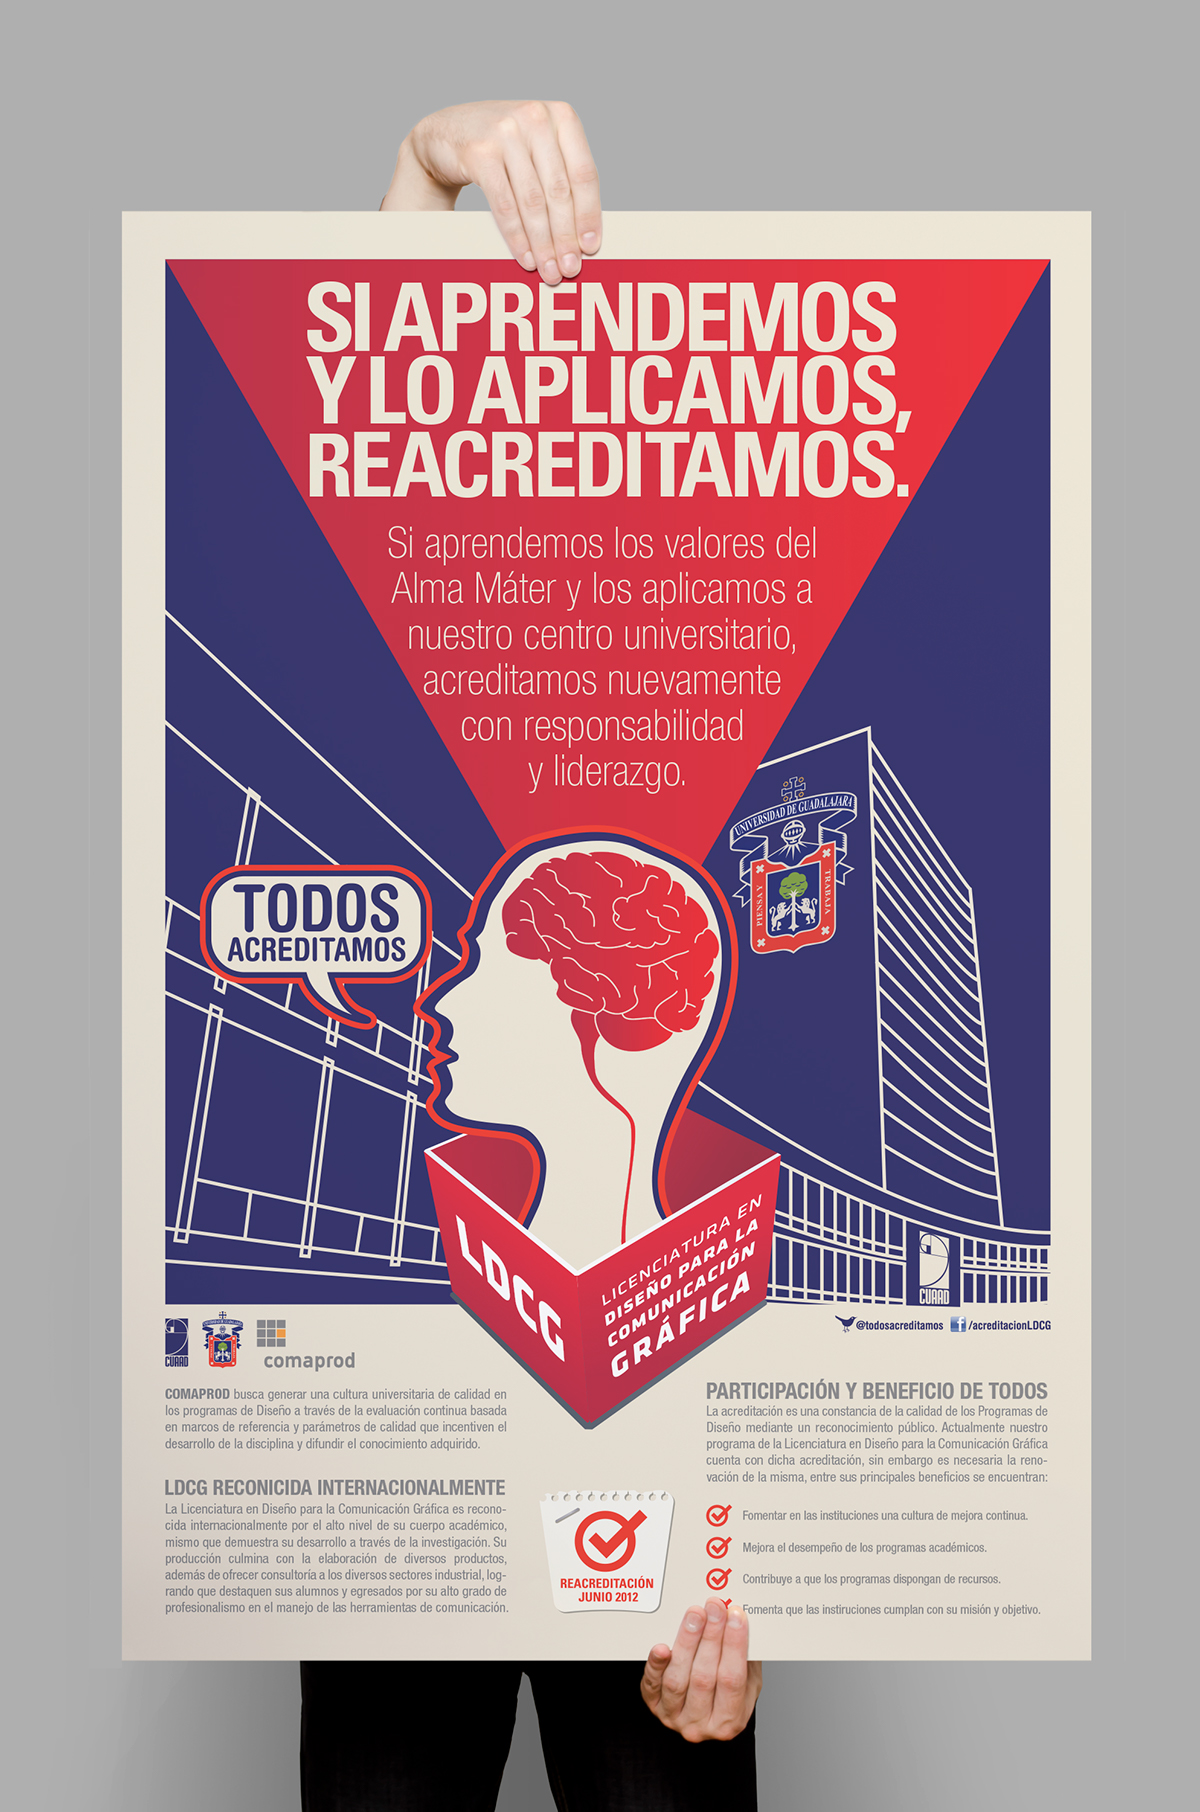 Graphic Desig University of Guadalajara LDCG Campaña Social mexico posters campaign cuaad